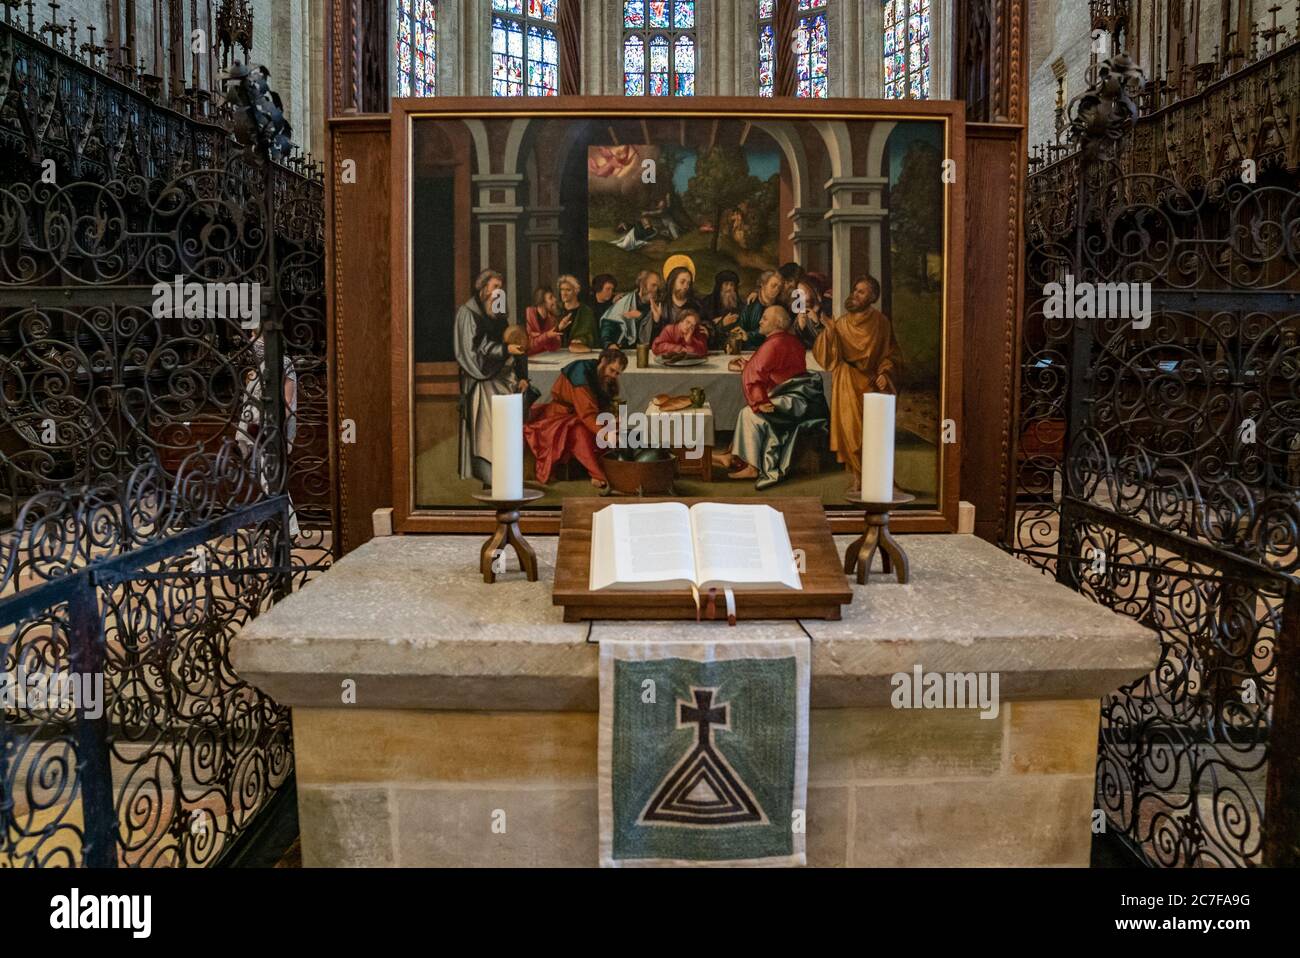 Ulm, BW / Allemagne - 14 juillet 2020 : vue de l'autel et de la Bible dans le minster d'Ulm Banque D'Images